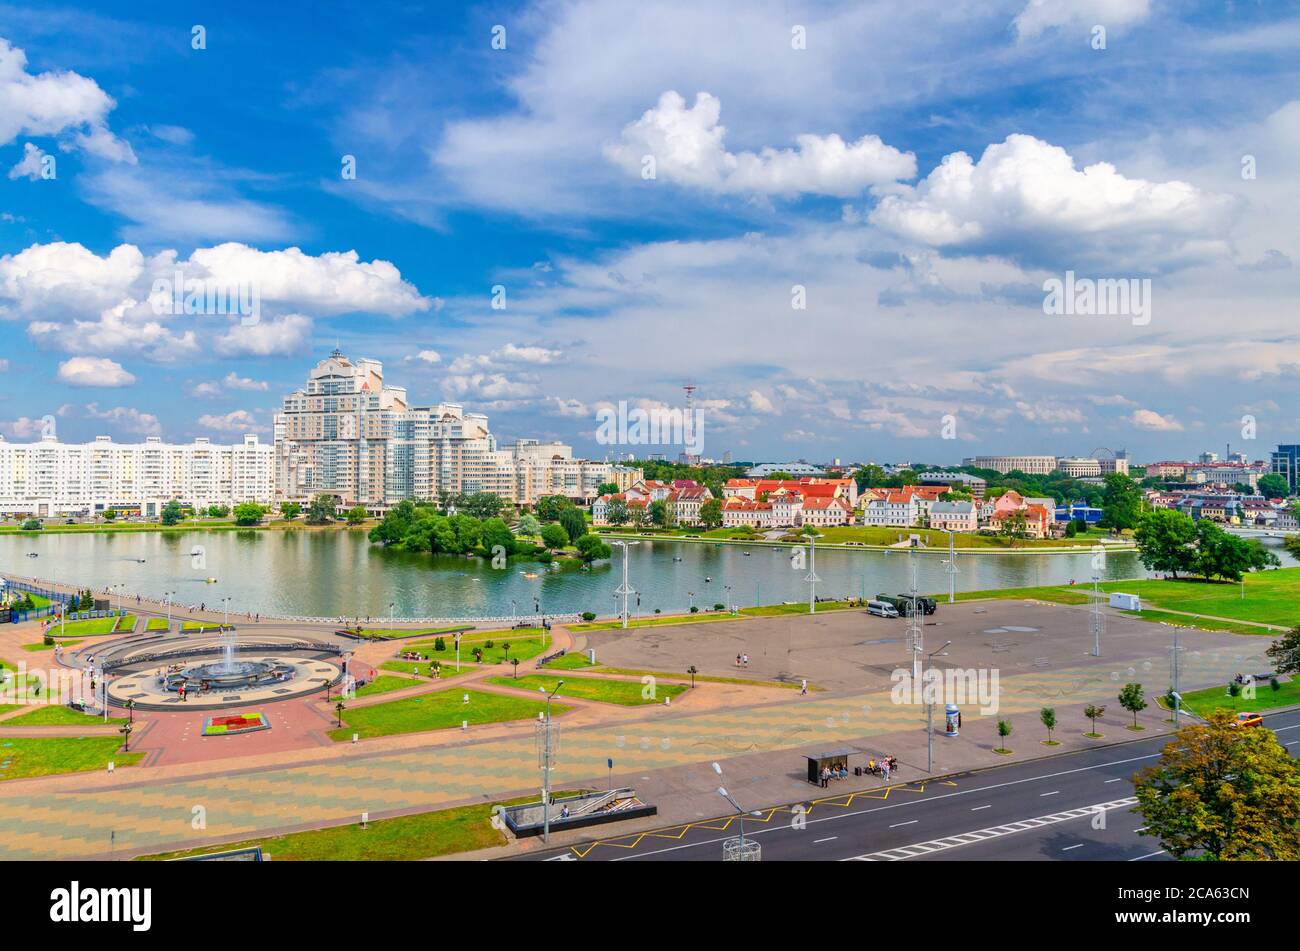 Vista panoramica aerea del centro storico della città di Minsk con l'argine del fiume Svislach o Svislac e il sobborgo di Traeckaje Trinity Hill, le nuvole bianche del cielo blu nella soleggiata giornata estiva, Repubblica di Bielorussia Foto Stock